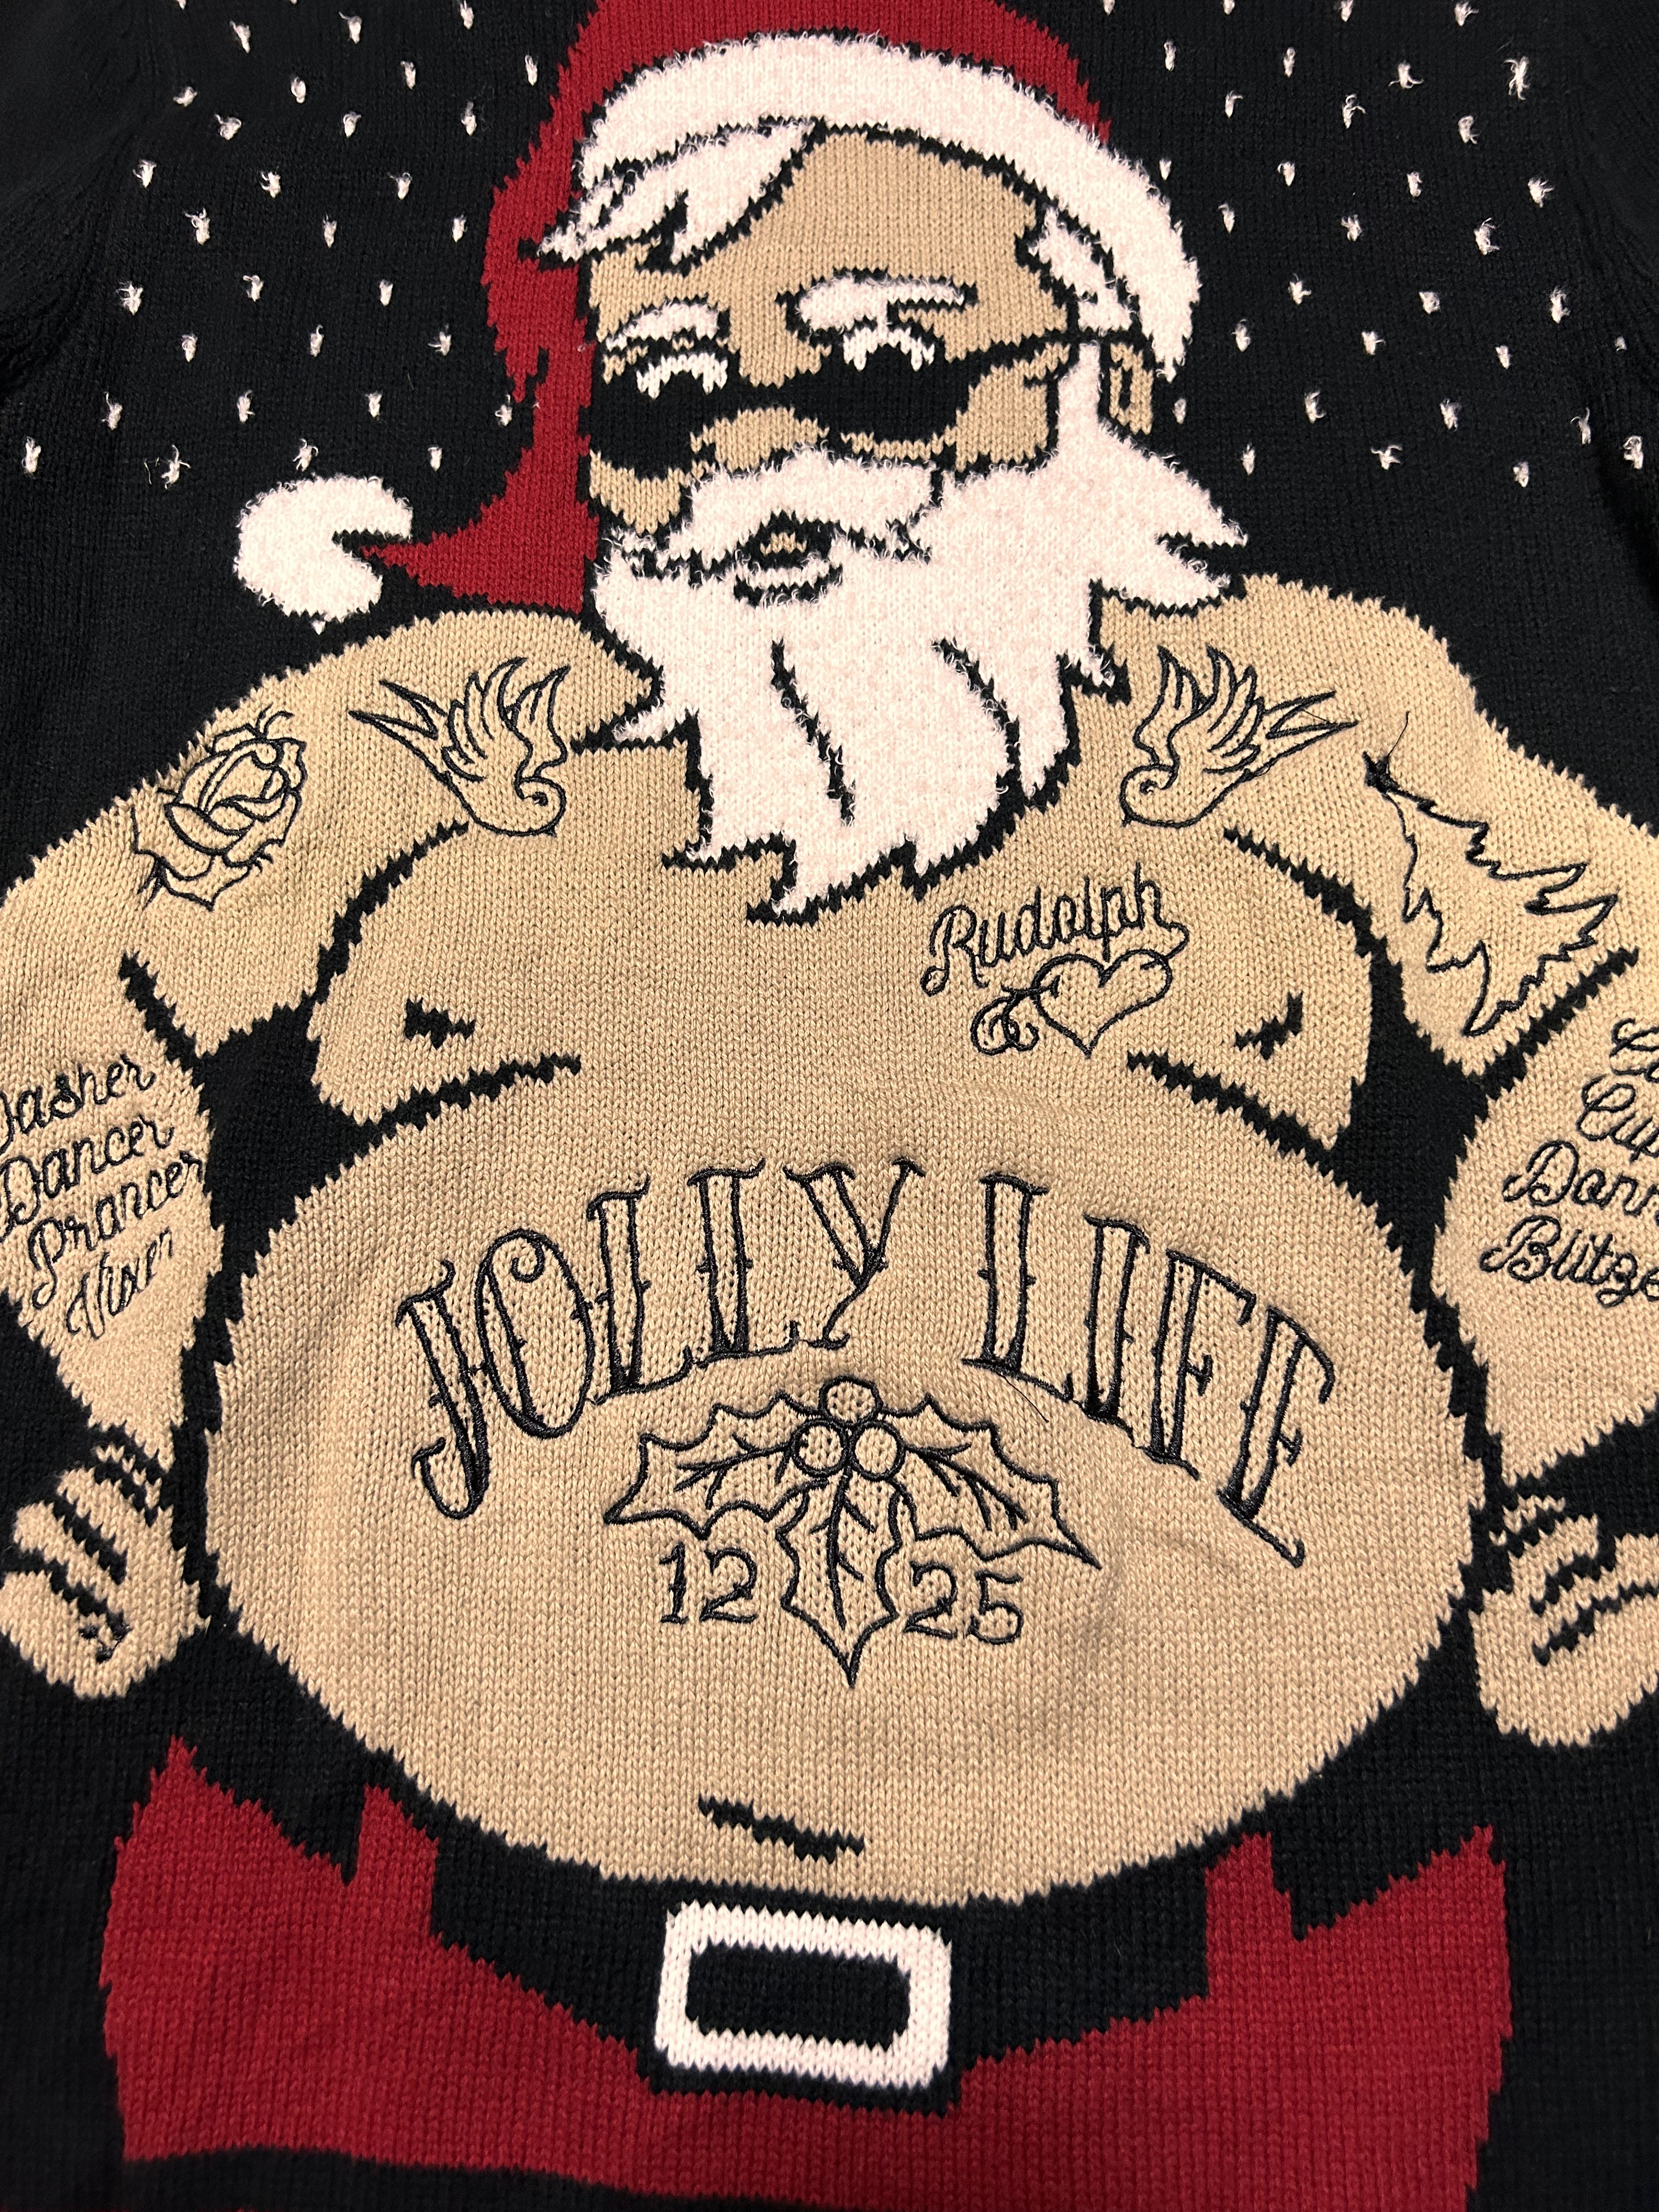 レトロ デザイン 刺繍 サンタクロース クリスマス ニット ポロセーター